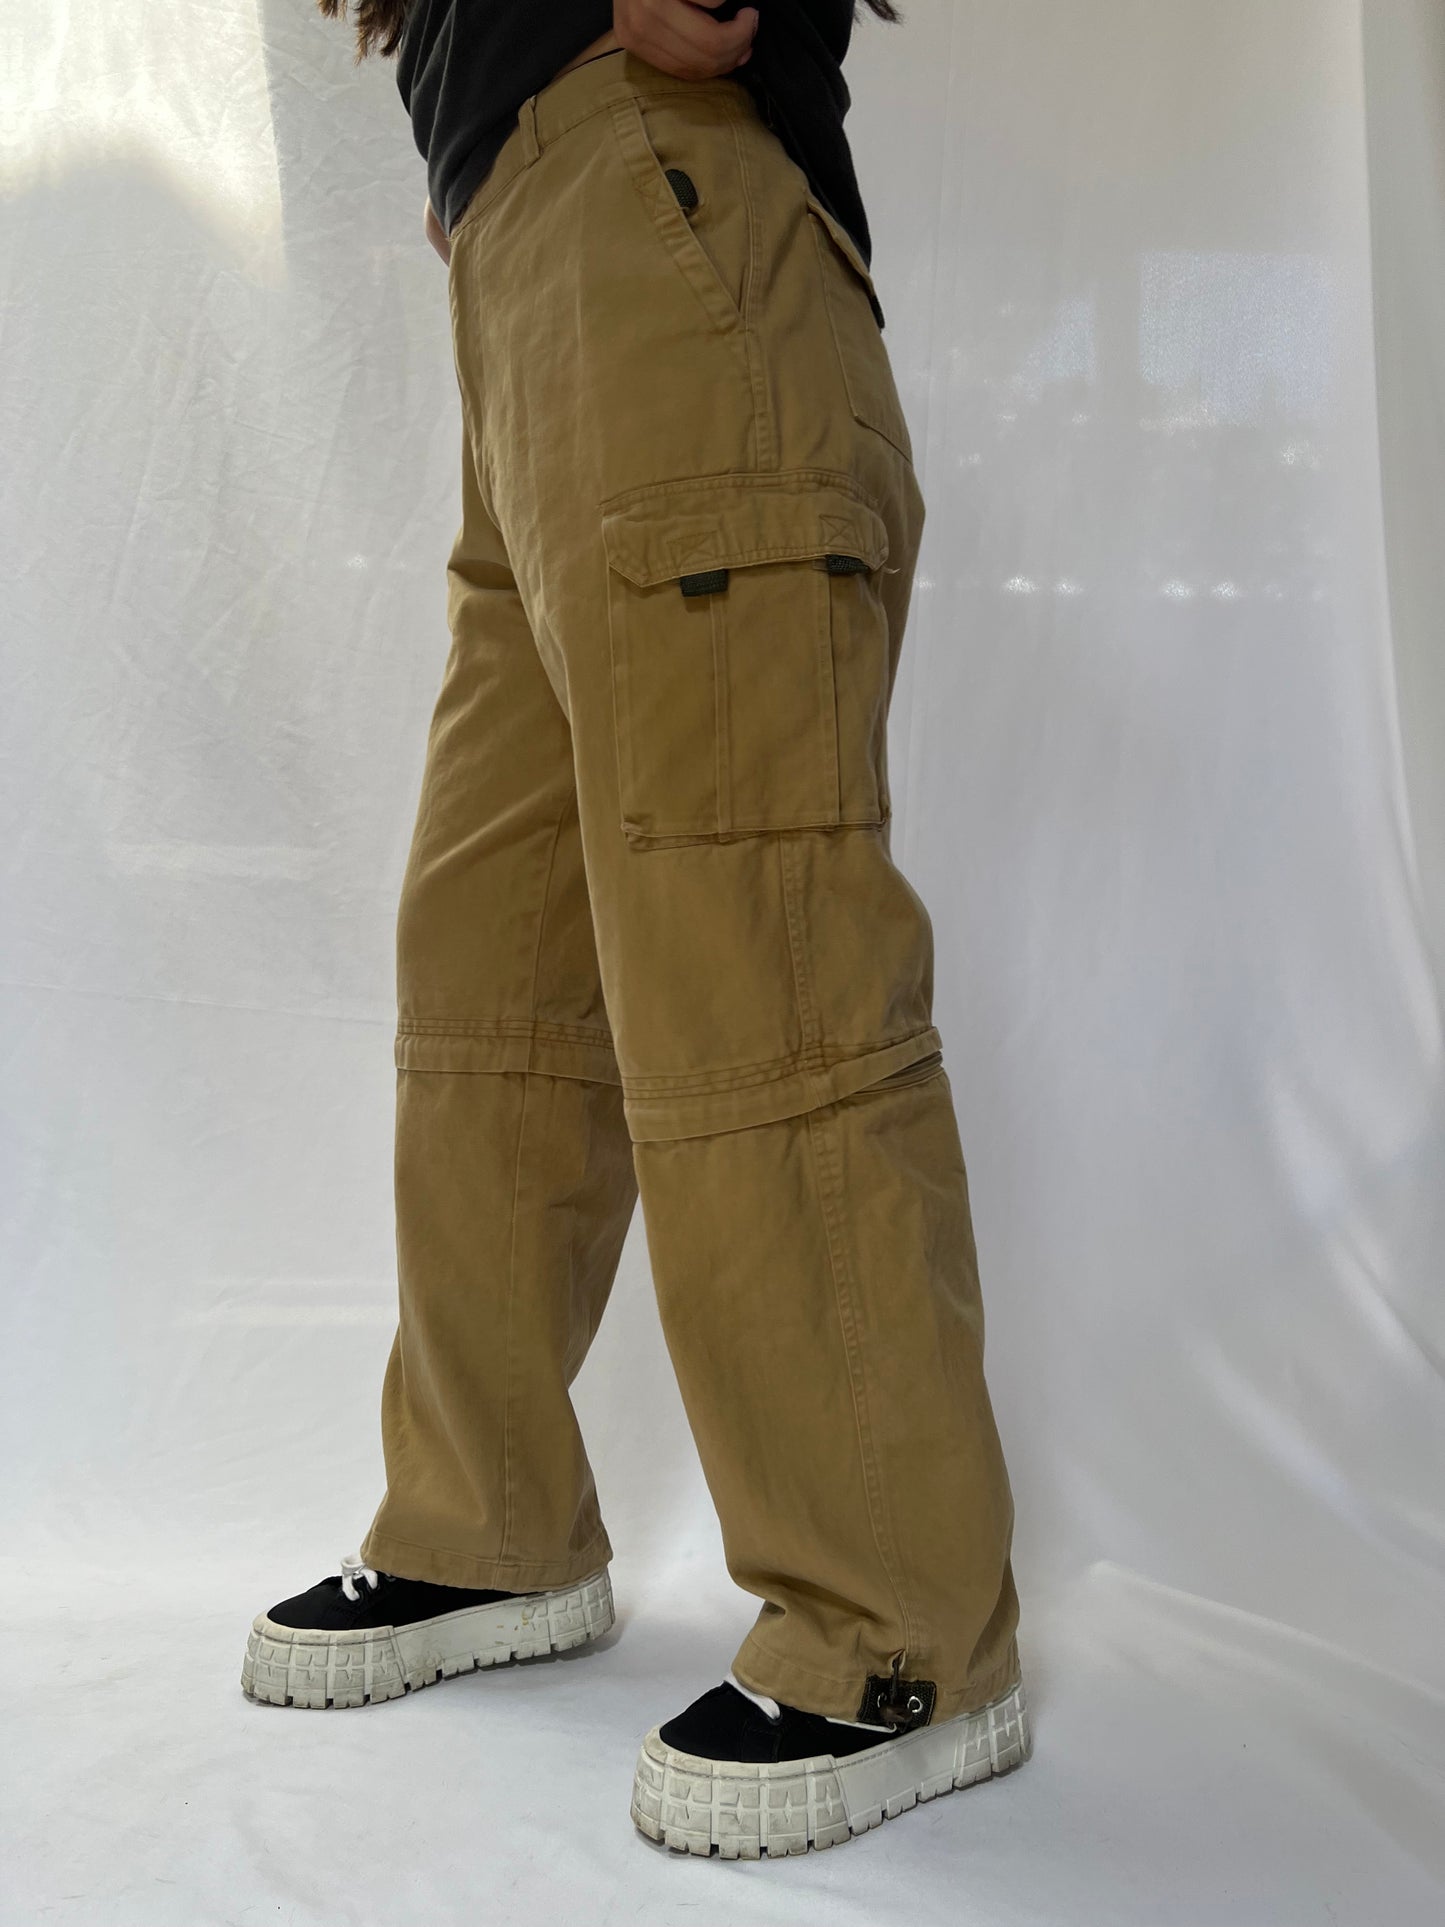 Khaki Cargo Pants - 32"